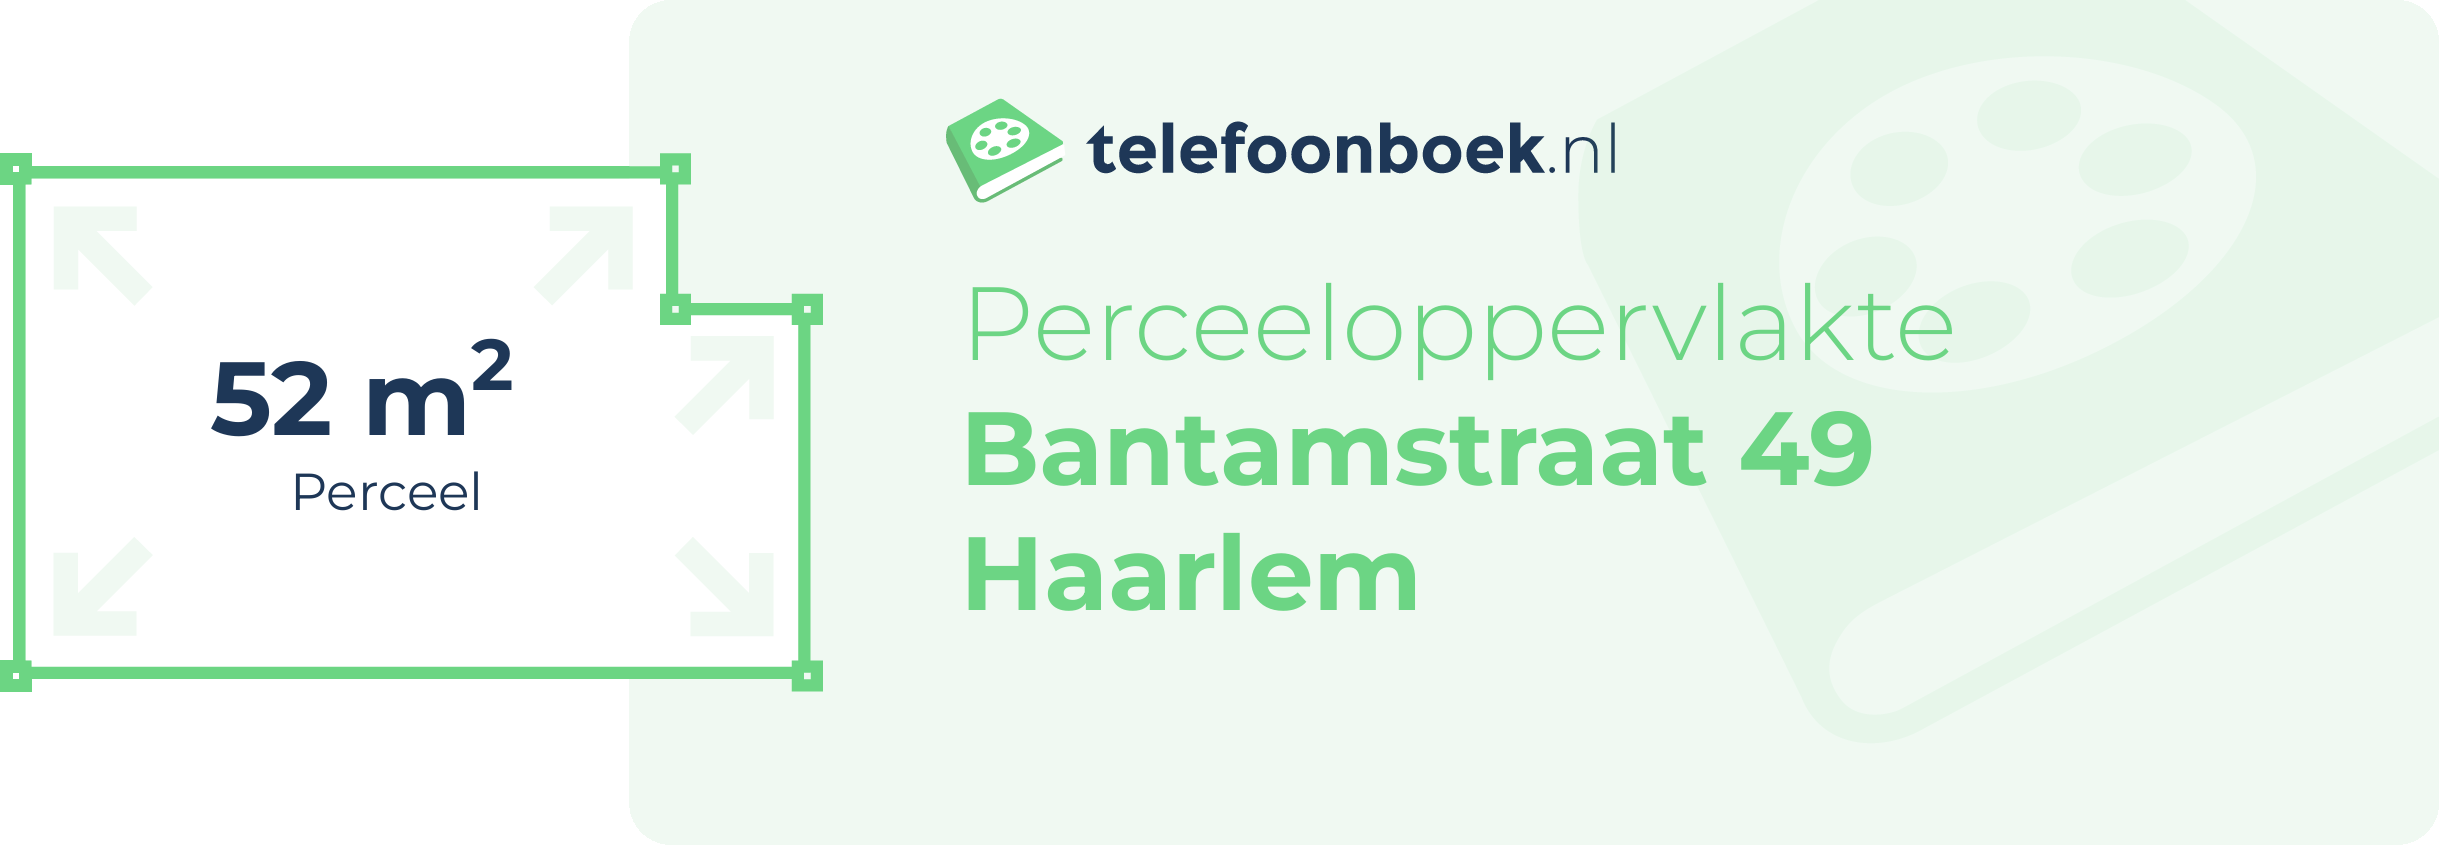 Perceeloppervlakte Bantamstraat 49 Haarlem